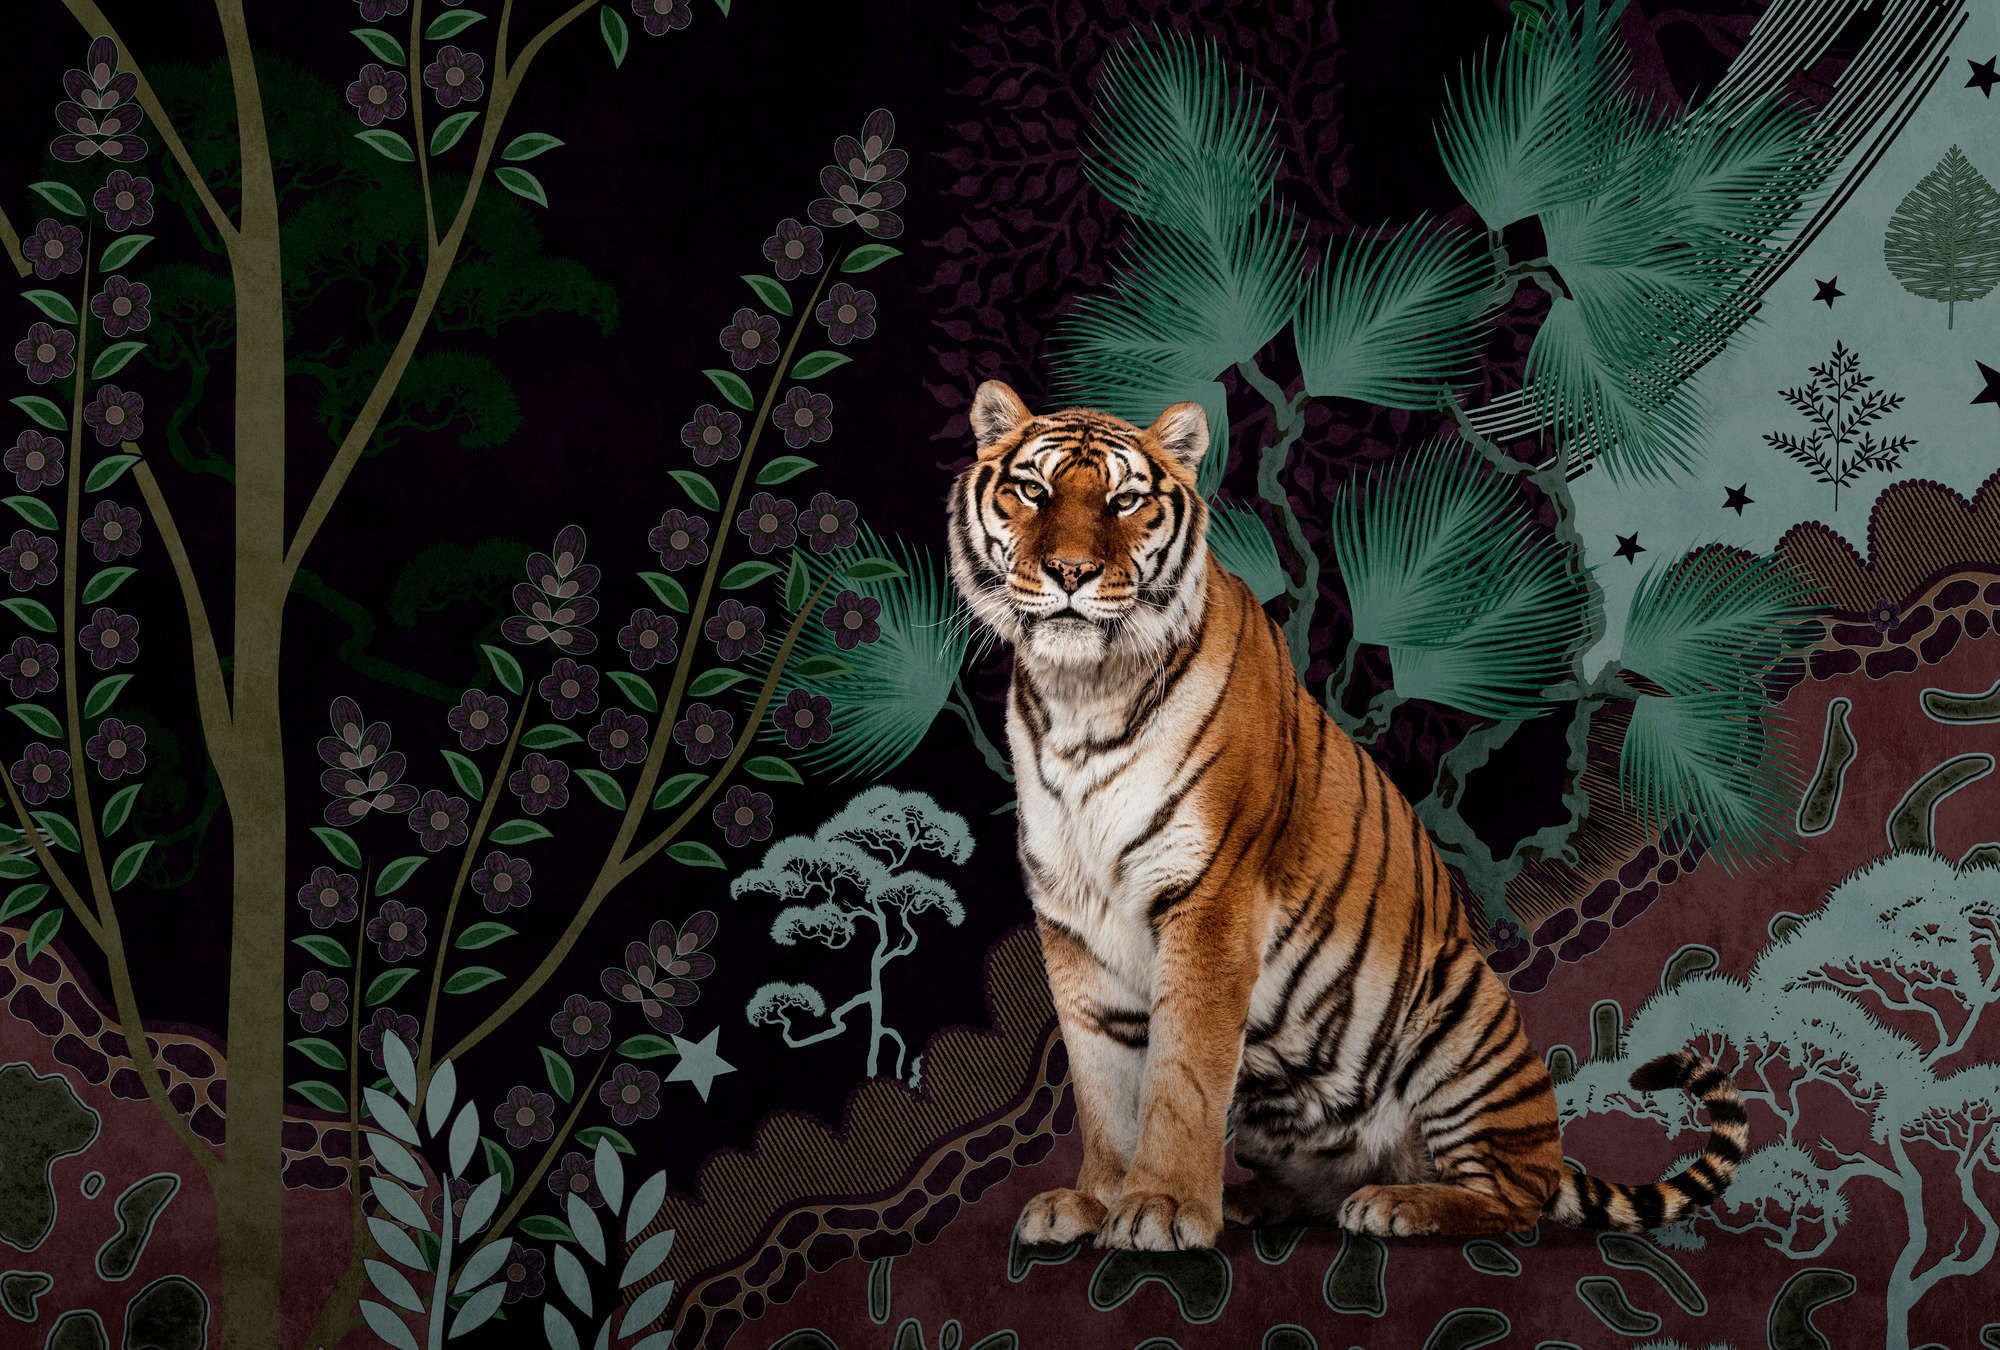             Fotomural »khan« - Motivo abstracto de jungla con tigre - Tela no tejida de alta calidad, lisa y ligeramente brillante
        